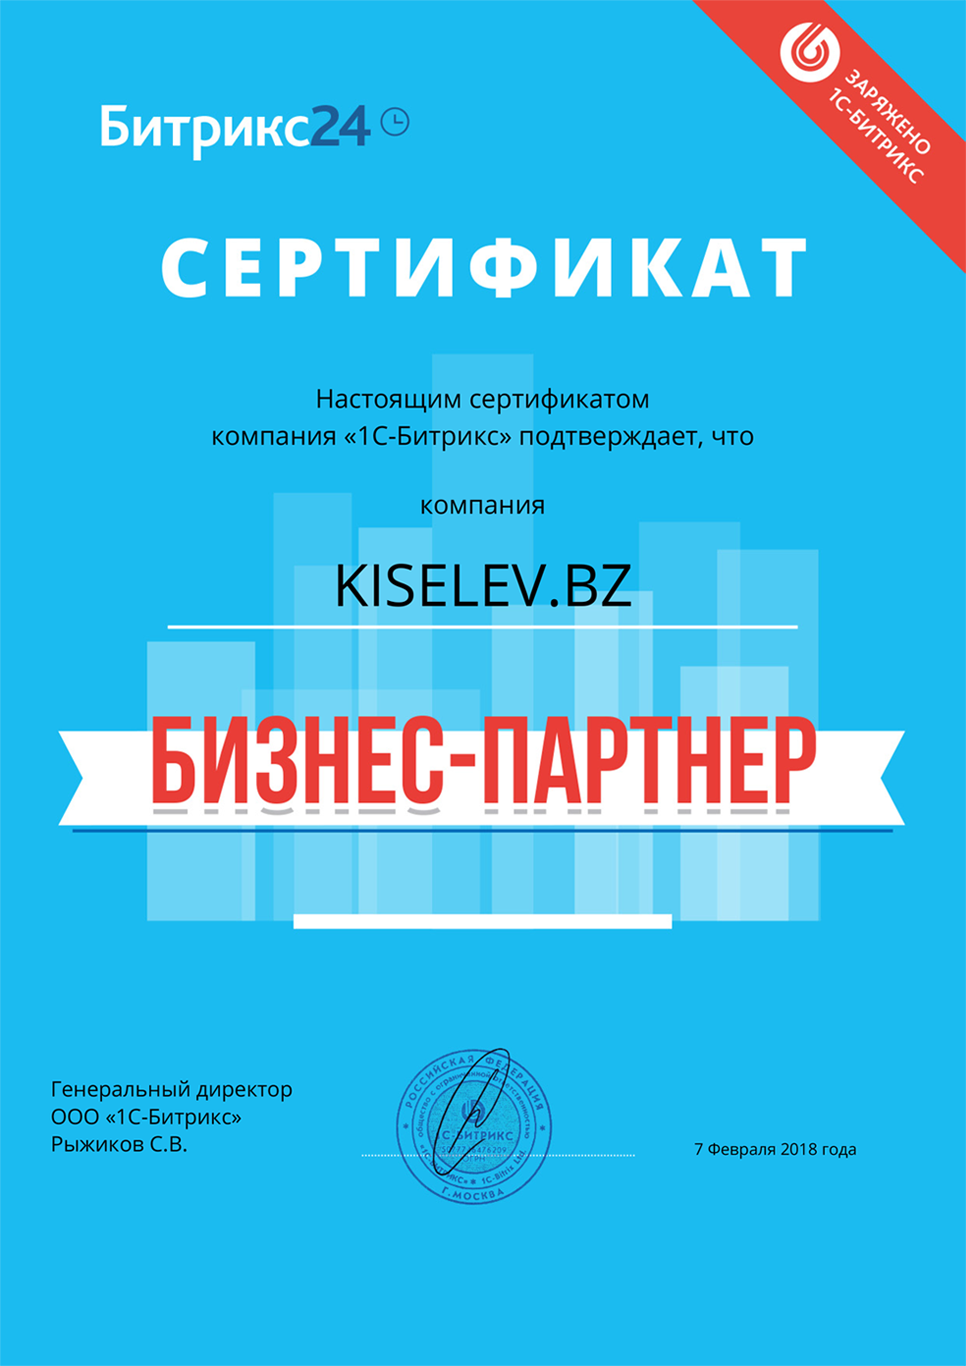 Сертификат партнёра по АМОСРМ в Димитровграде